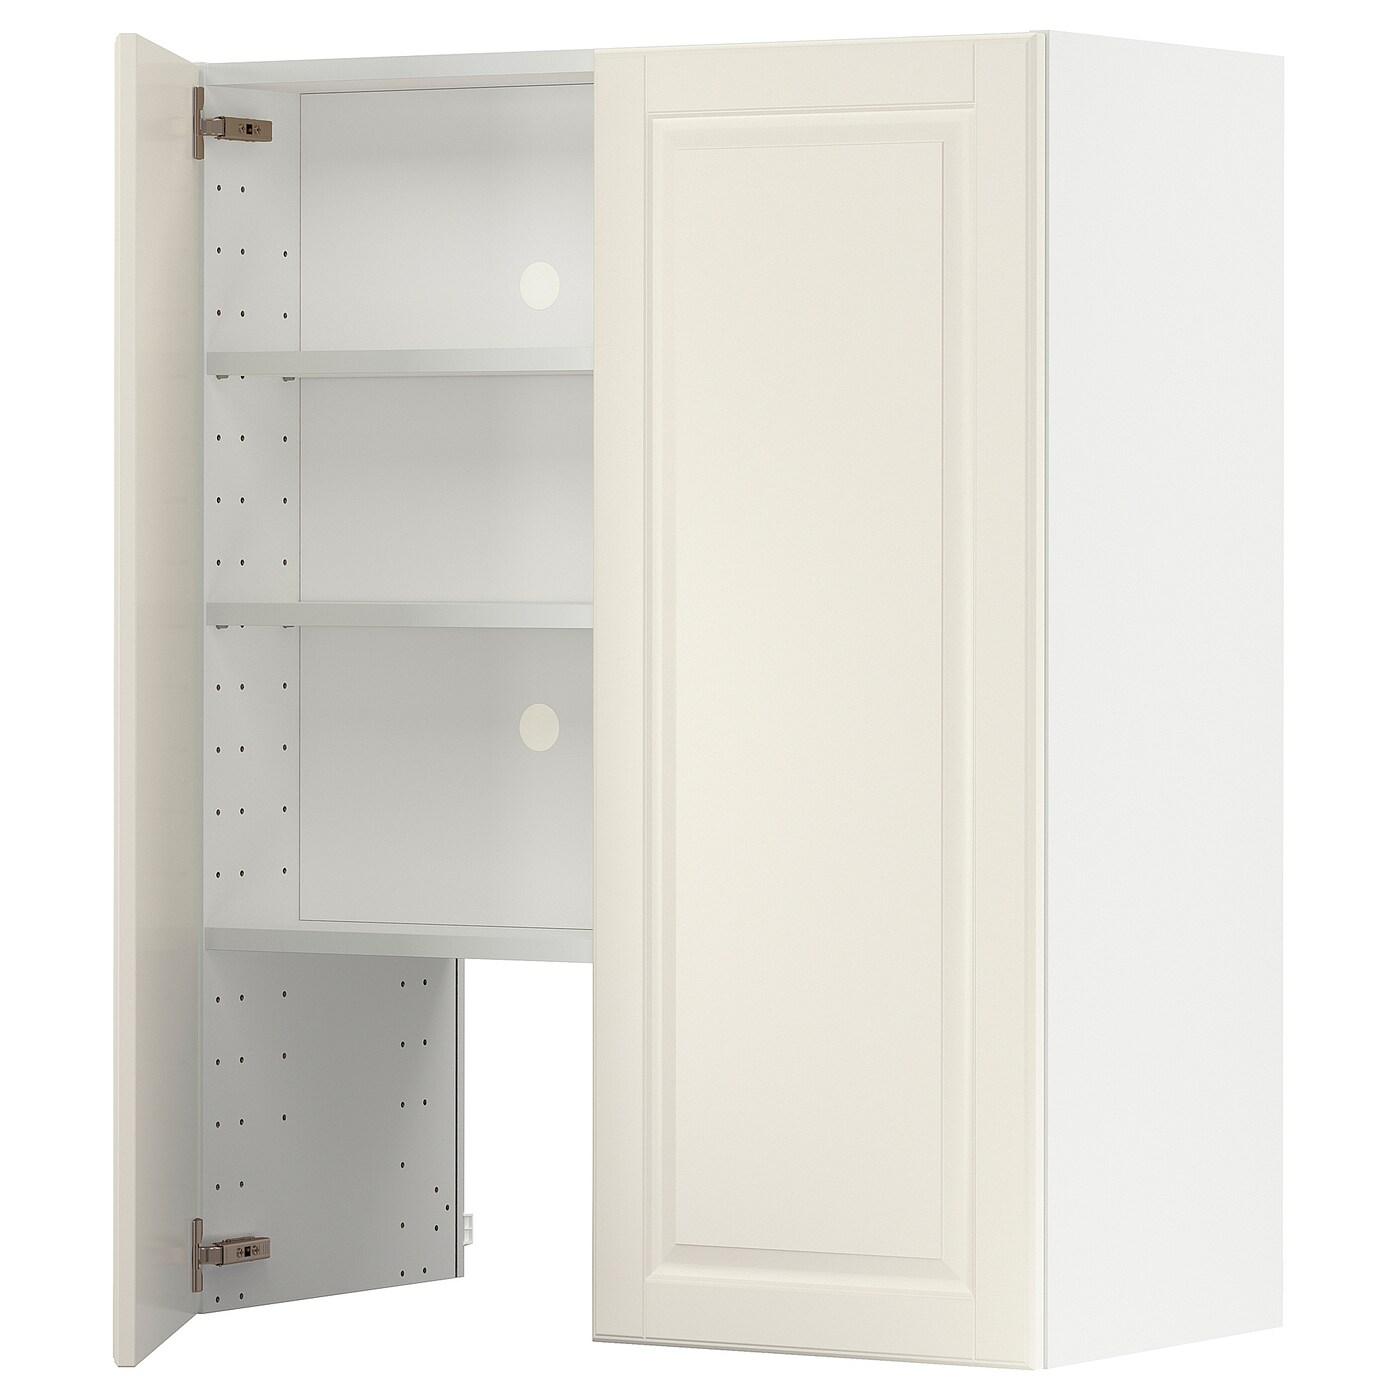 Навесной шкаф - METOD IKEA/ МЕТОД ИКЕА, 80х100 см, белый/кремовый